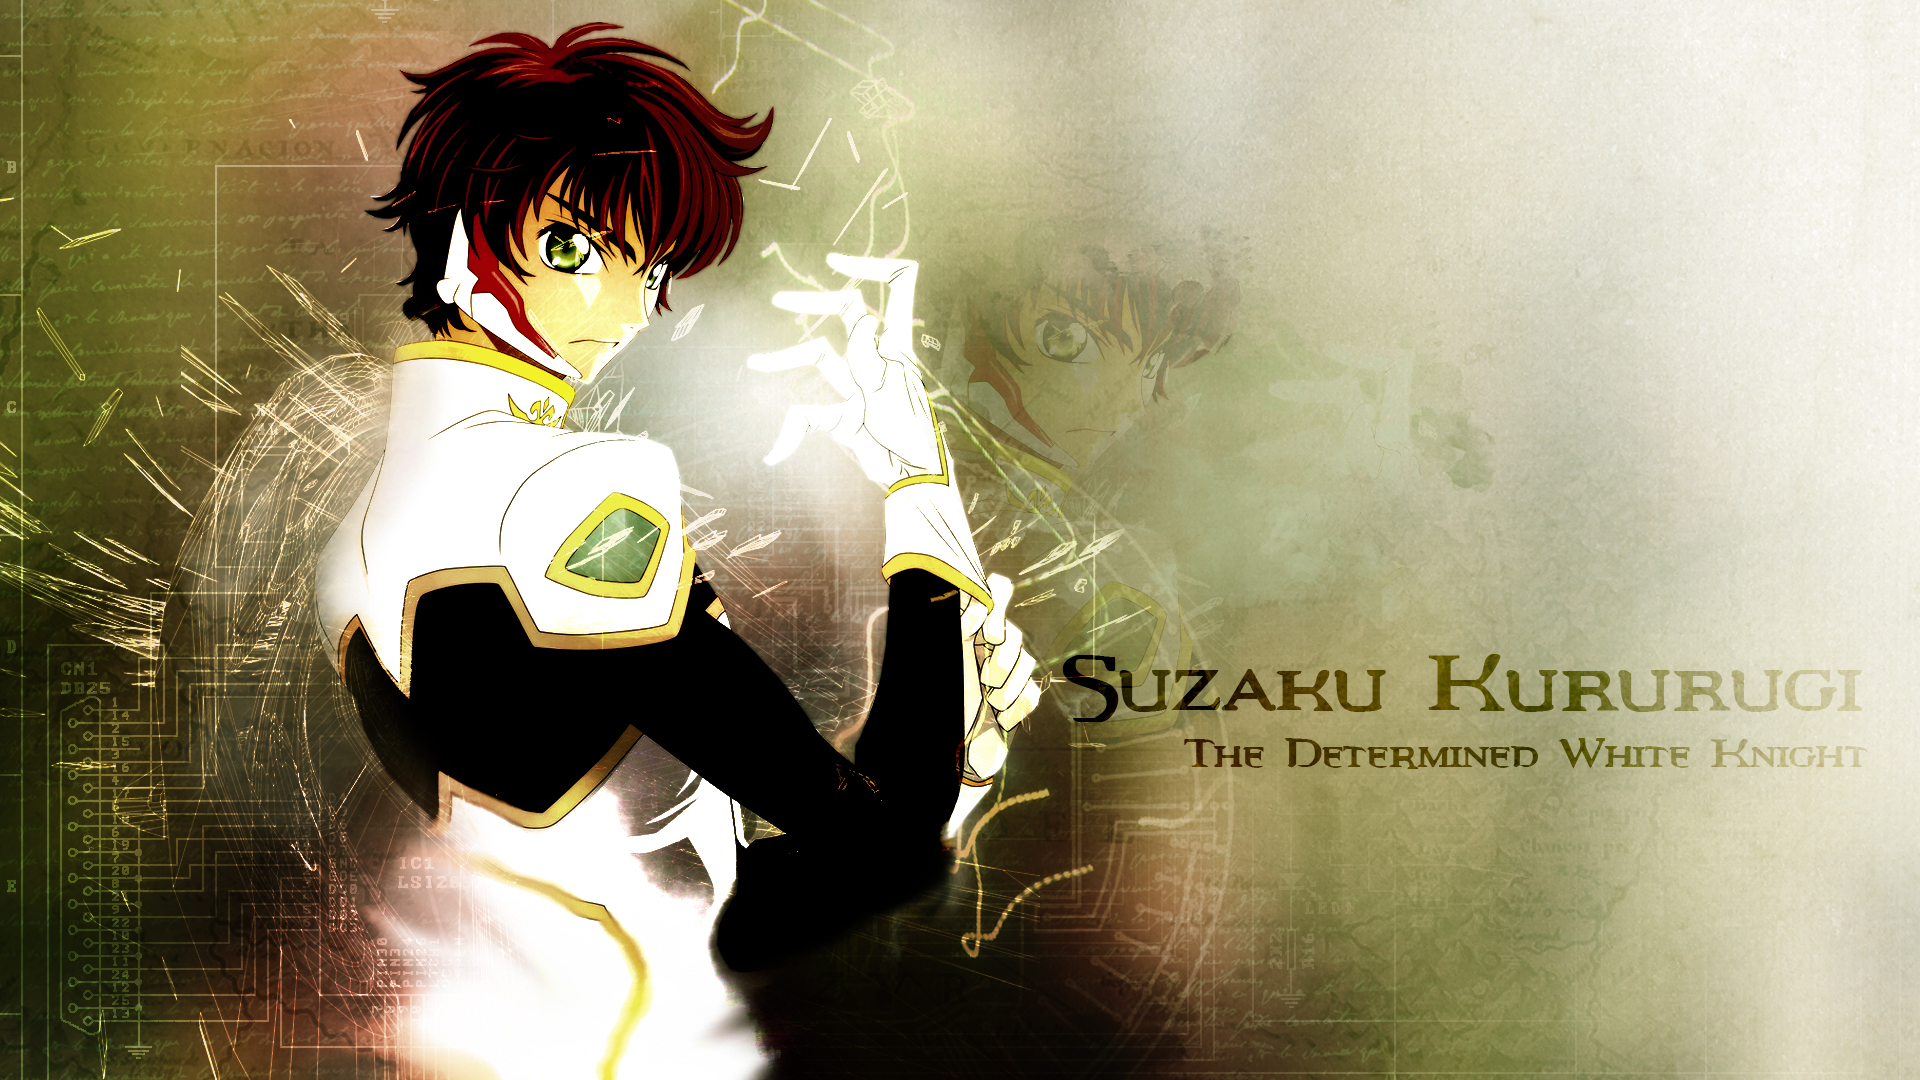 Suzaku the Knight